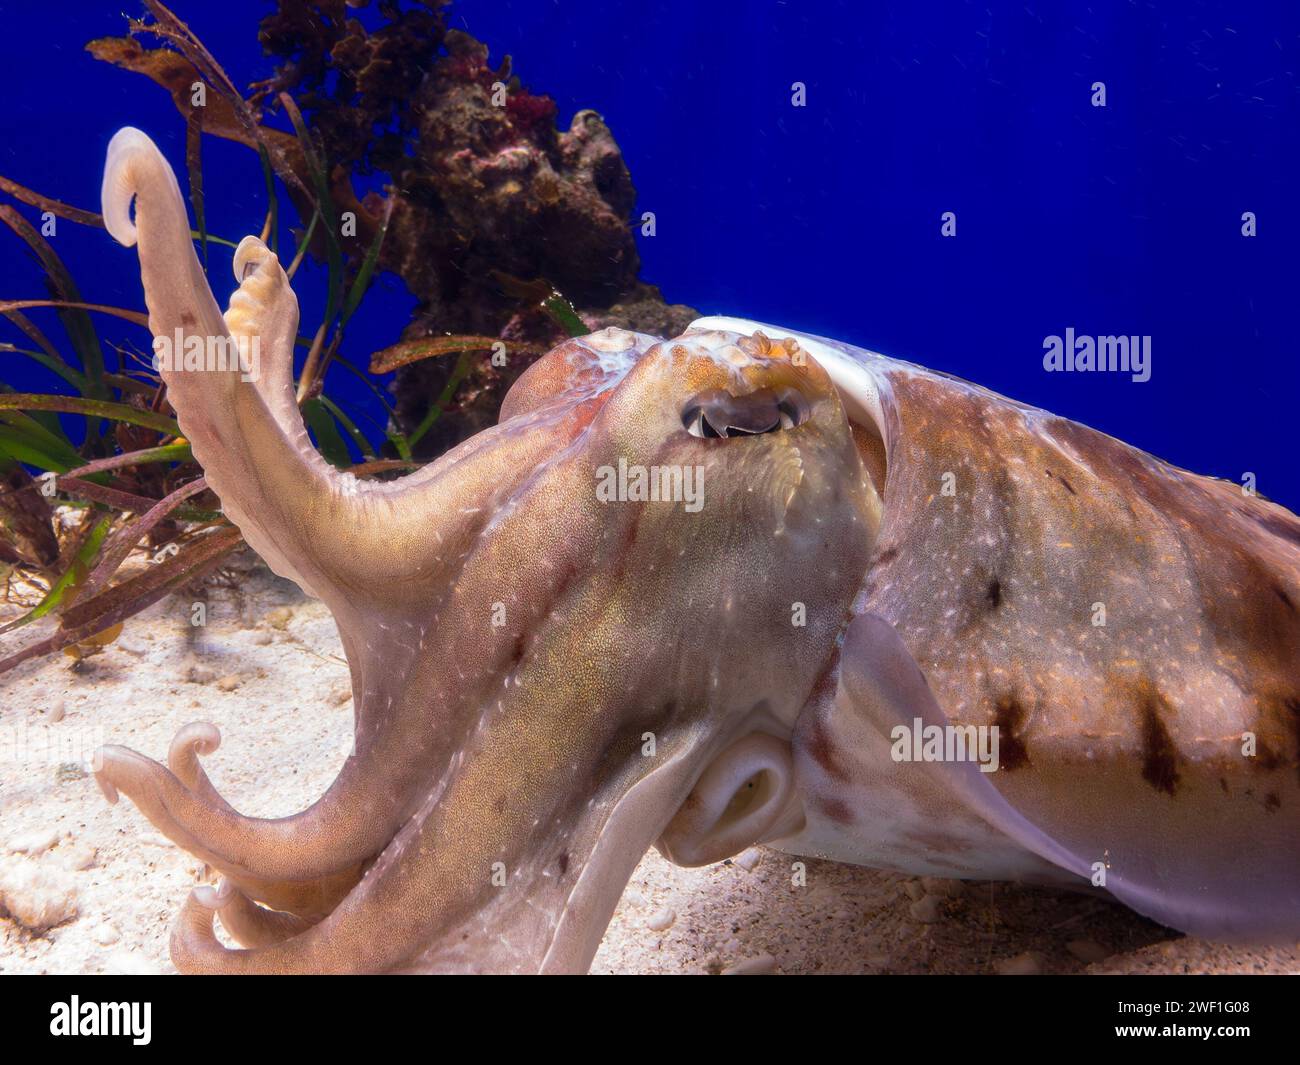 Common cuttlefish (Sepia officinalis) in blue zoo aquarium Stock Photo